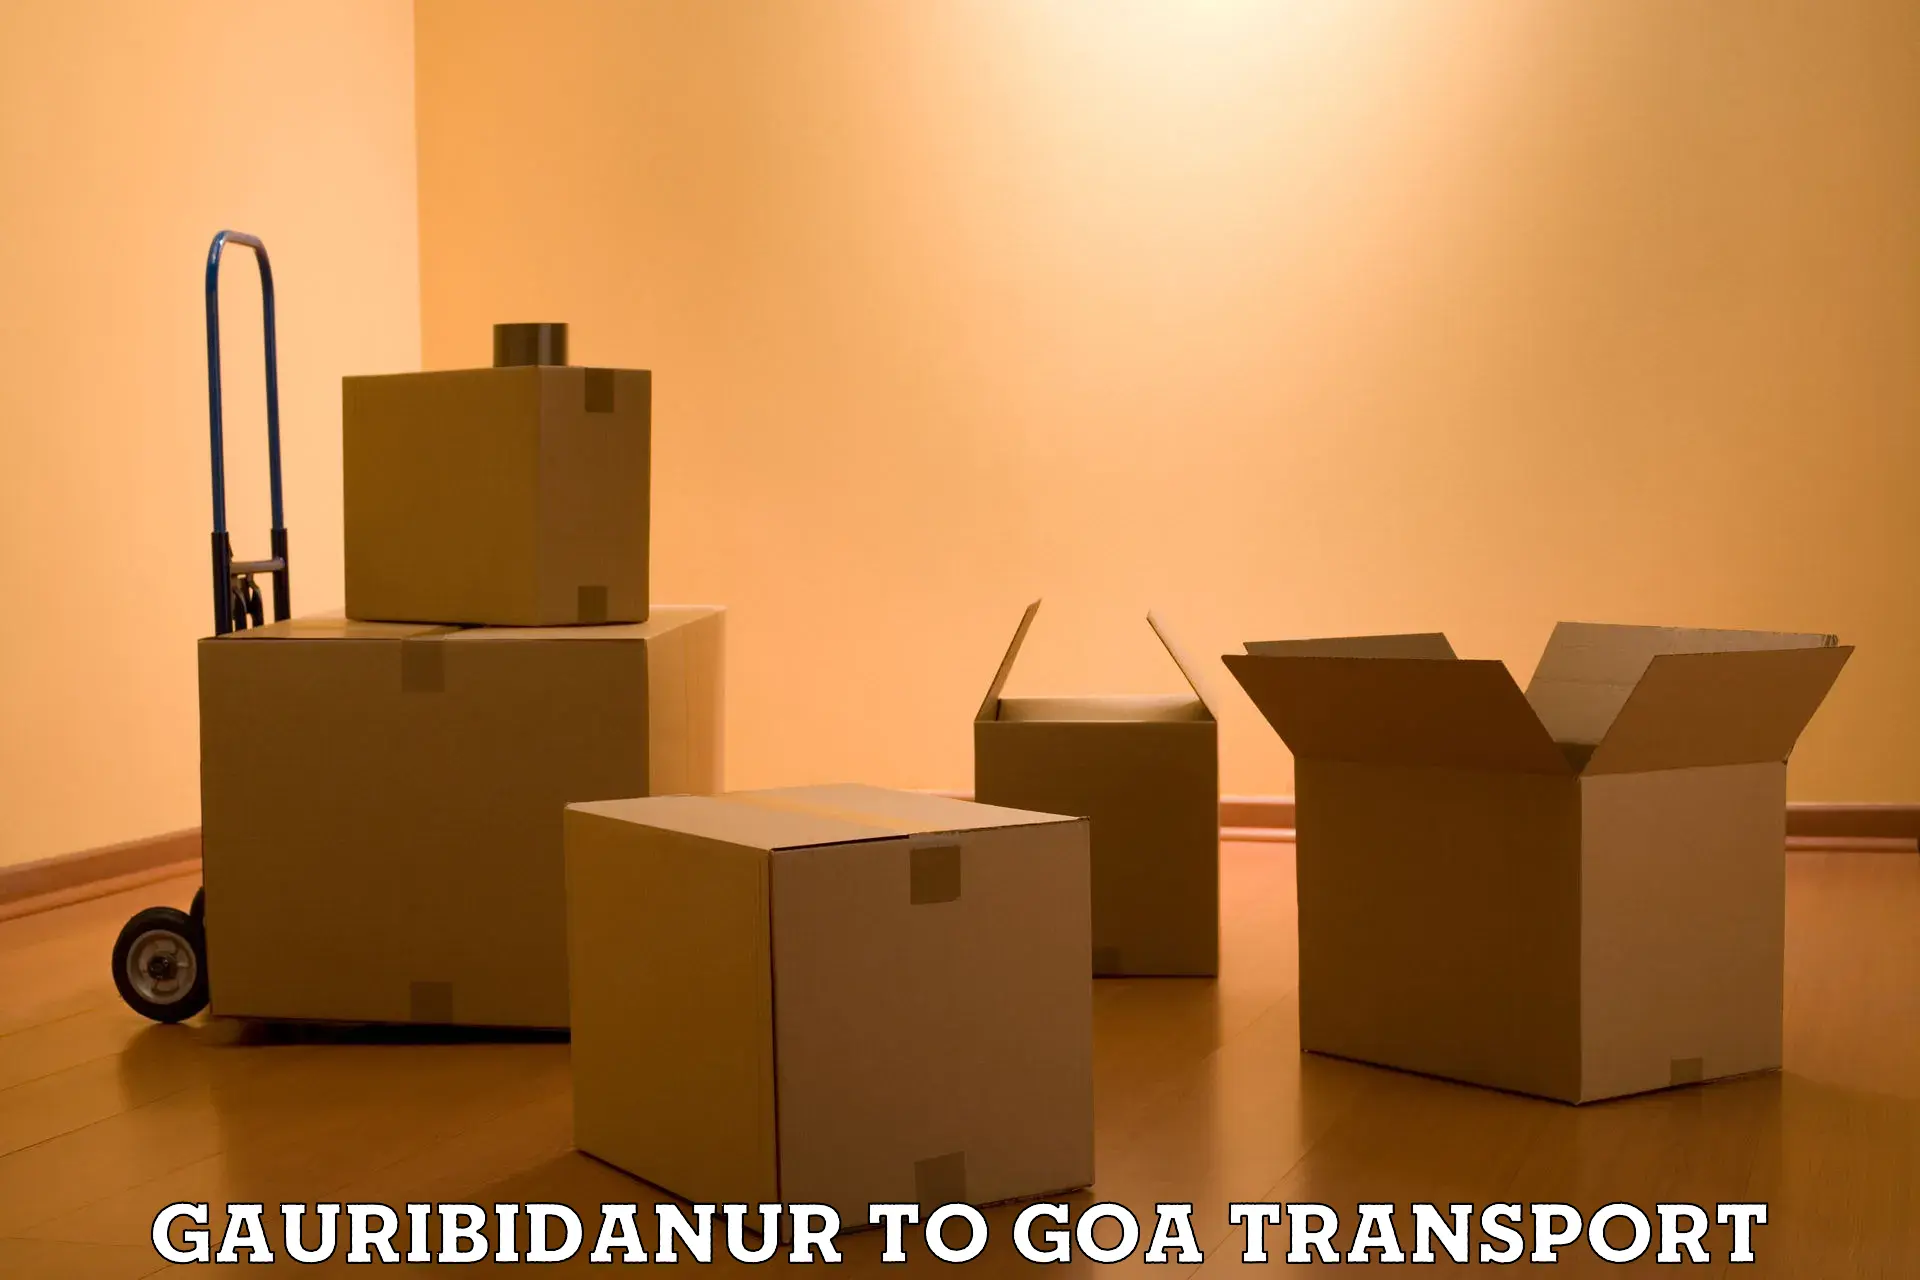 Two wheeler parcel service Gauribidanur to IIT Goa